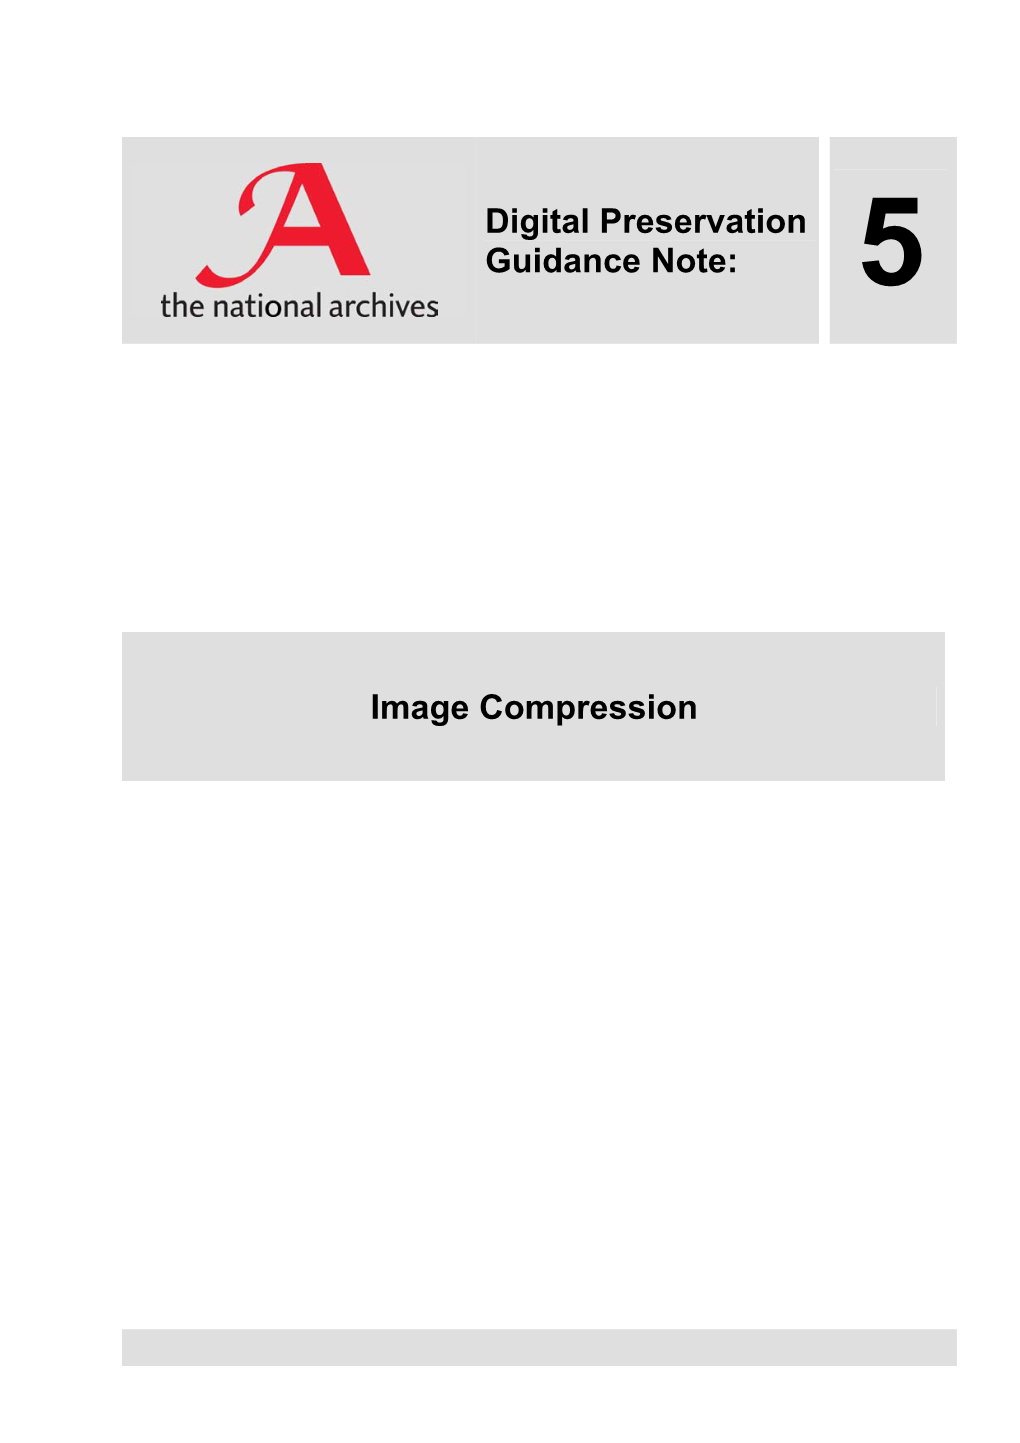 Digital Preservation Guidance Note 5: Image Compression